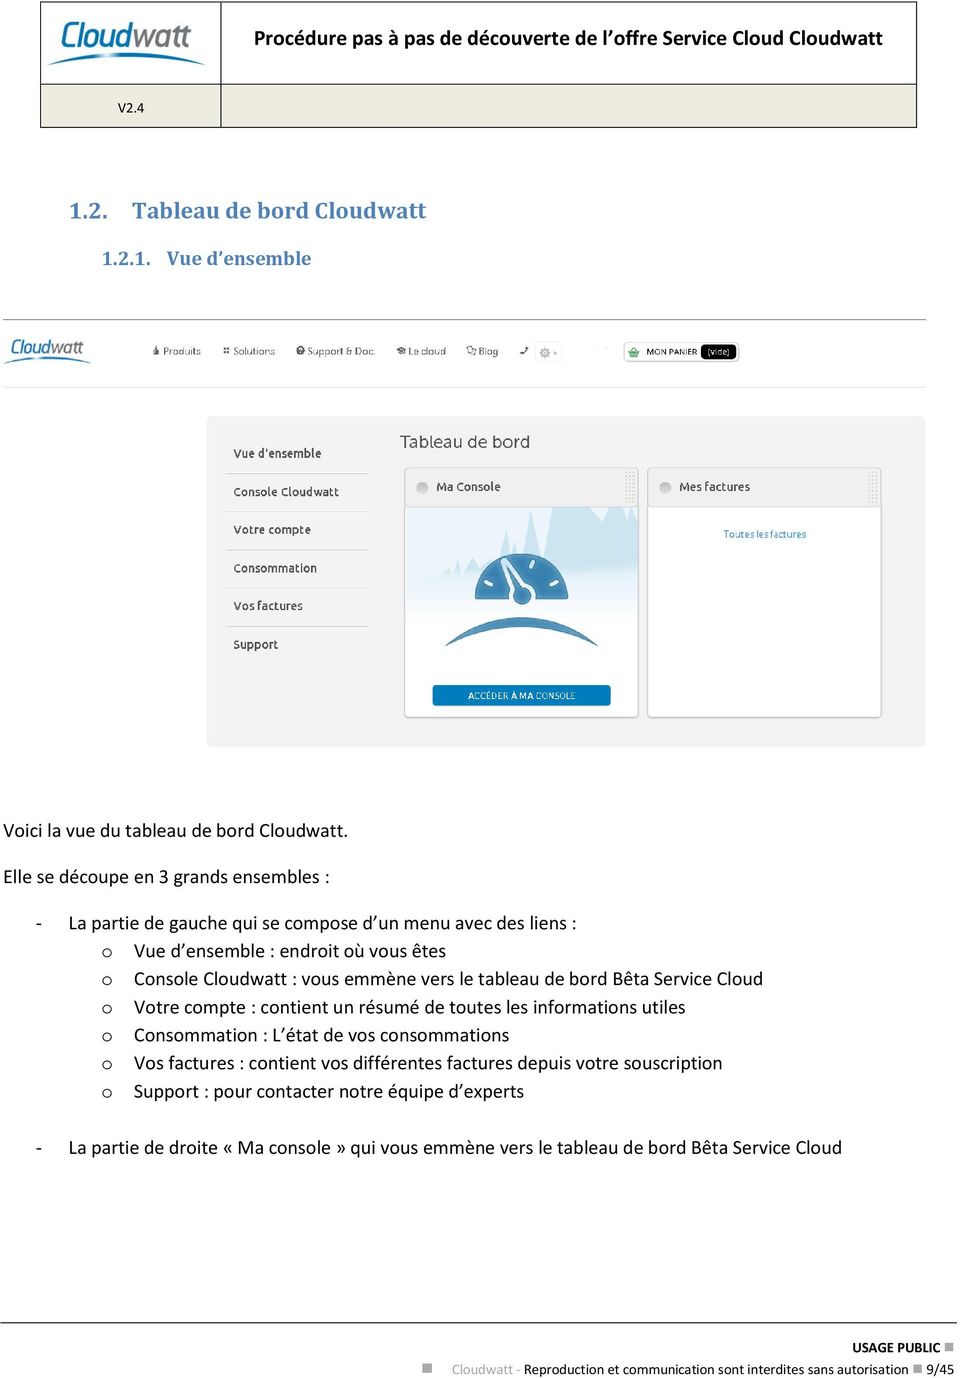 le tableau de bord Bêta Service Cloud o Votre compte : contient un résumé de toutes les informations utiles o Consommation : L état de vos consommations o Vos factures : contient vos